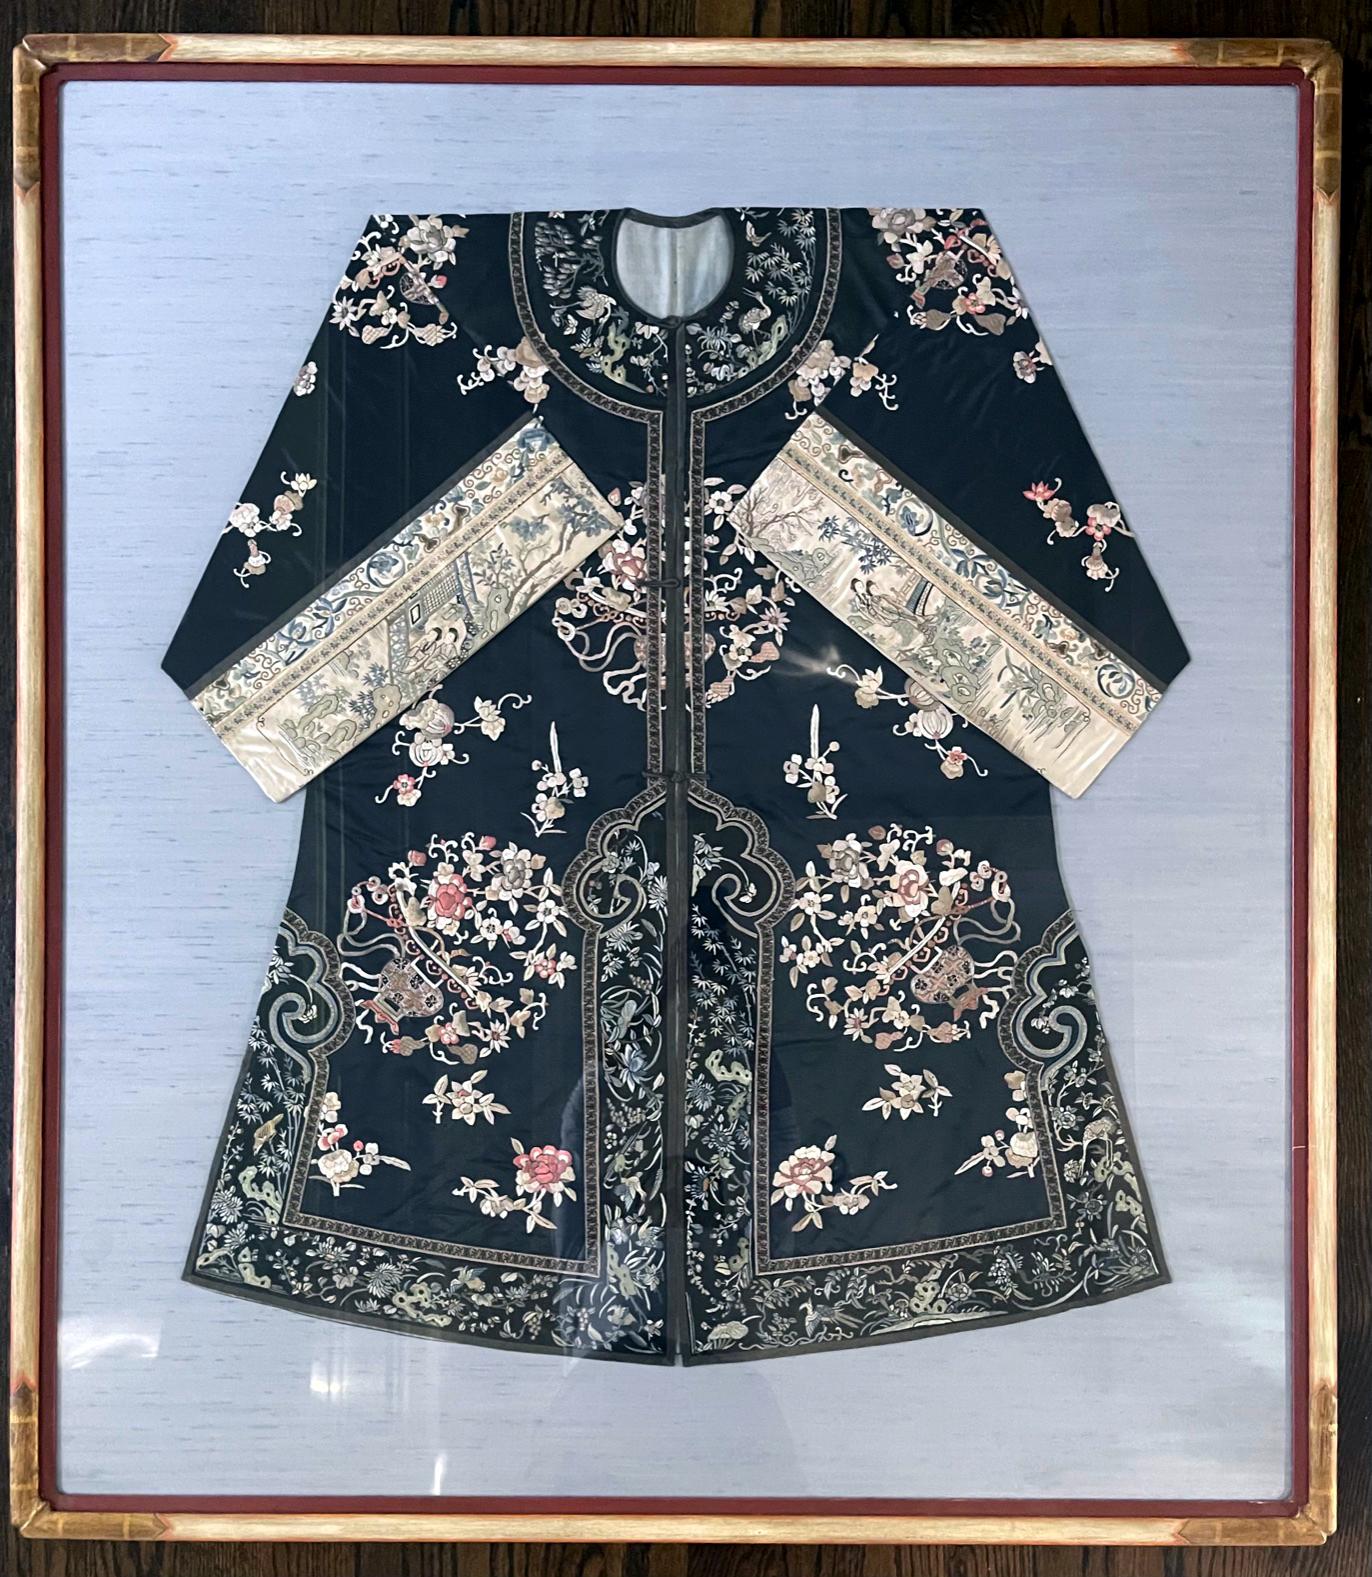 Manteau de femme en soie noire à manches larges, datant de la fin de la dynastie chinoise des Qing (milieu ou fin du XIXe siècle), monté et présenté sur un panneau de lin bleu et encadré comme une superbe œuvre d'art textile. Le manteau présente des